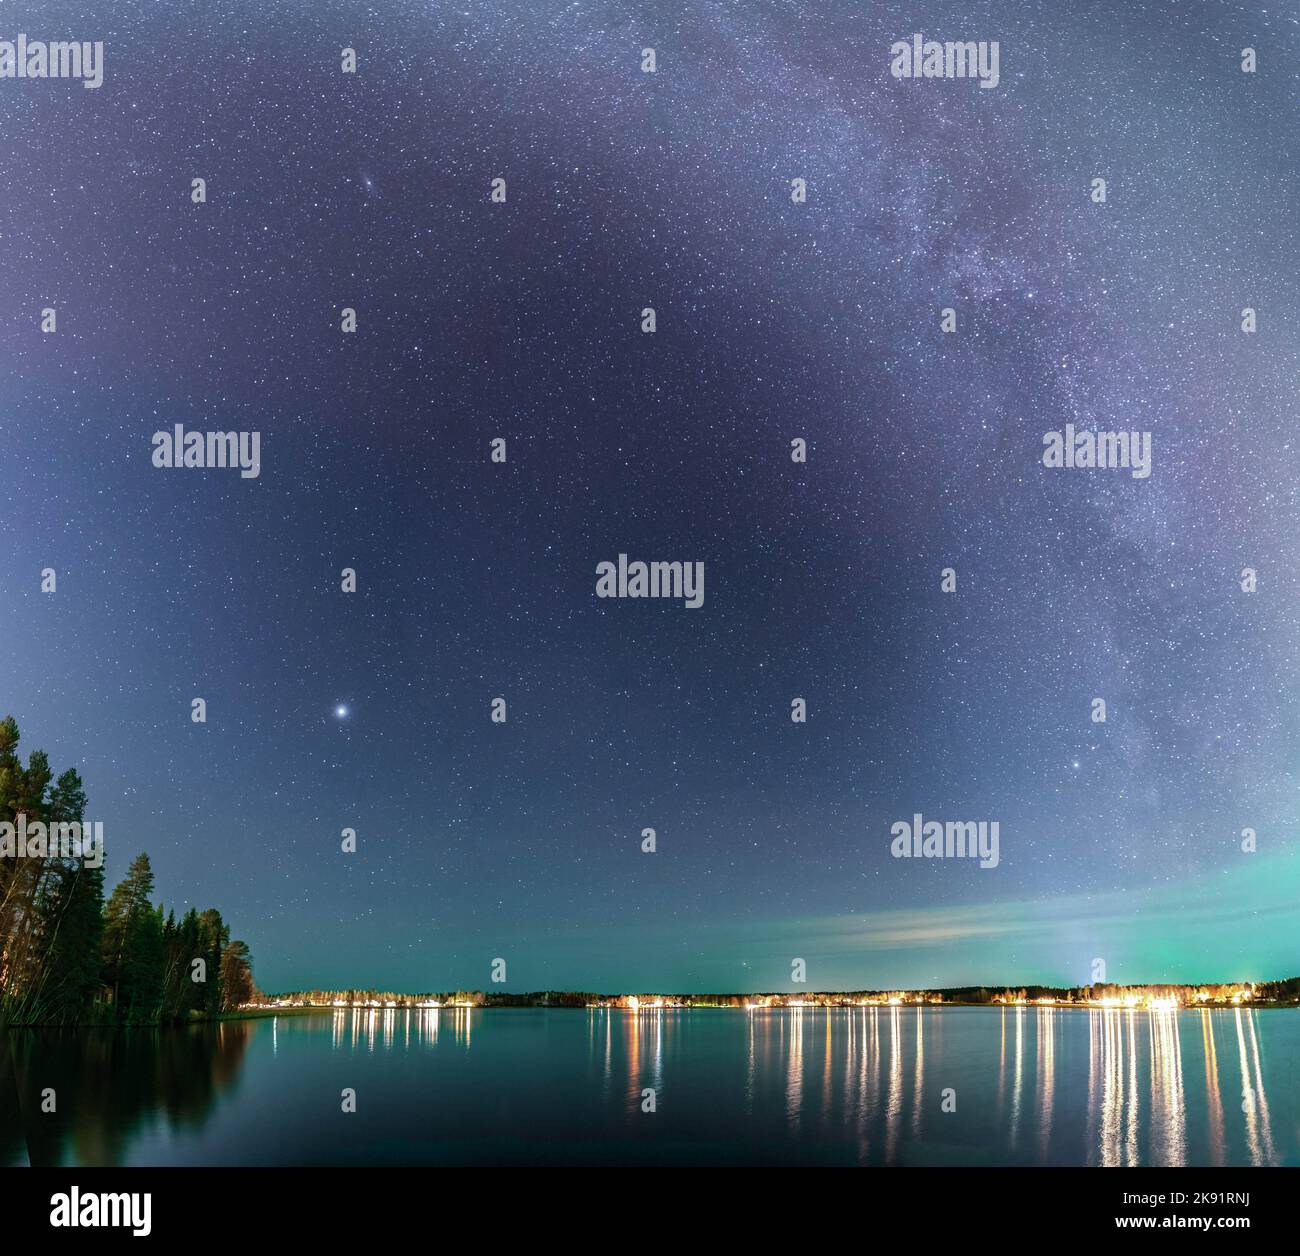 Meravigliosa galassia della Via Lattea sulla tranquilla notte del lago Stocksjo nella Svezia settentrionale, città di Umea. Foto notturna del cielo stellato, foto quadrata Foto Stock